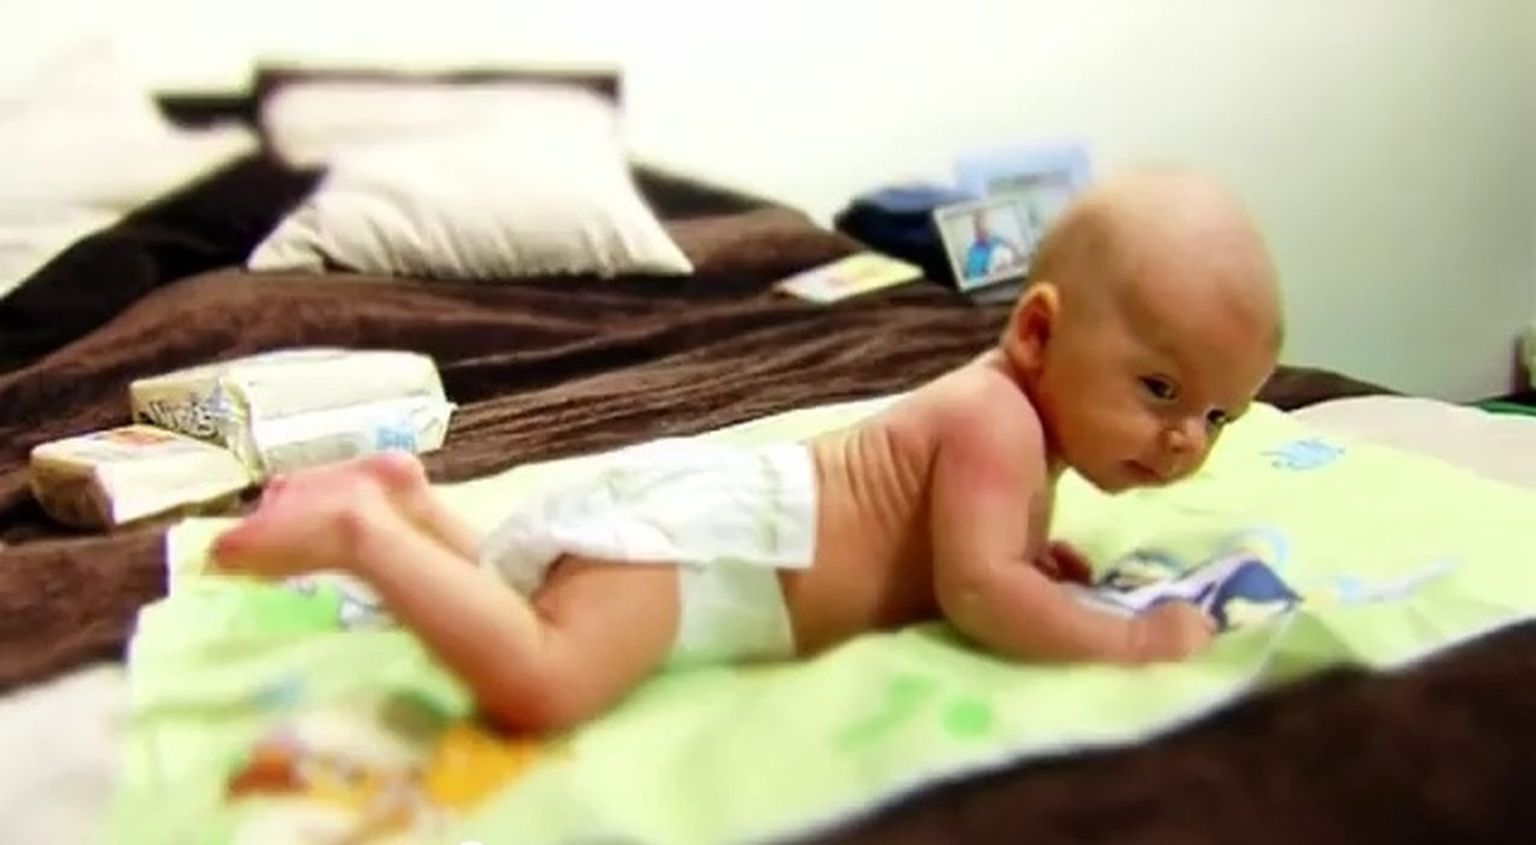 Комаровский грудной ребенок упал с дивана